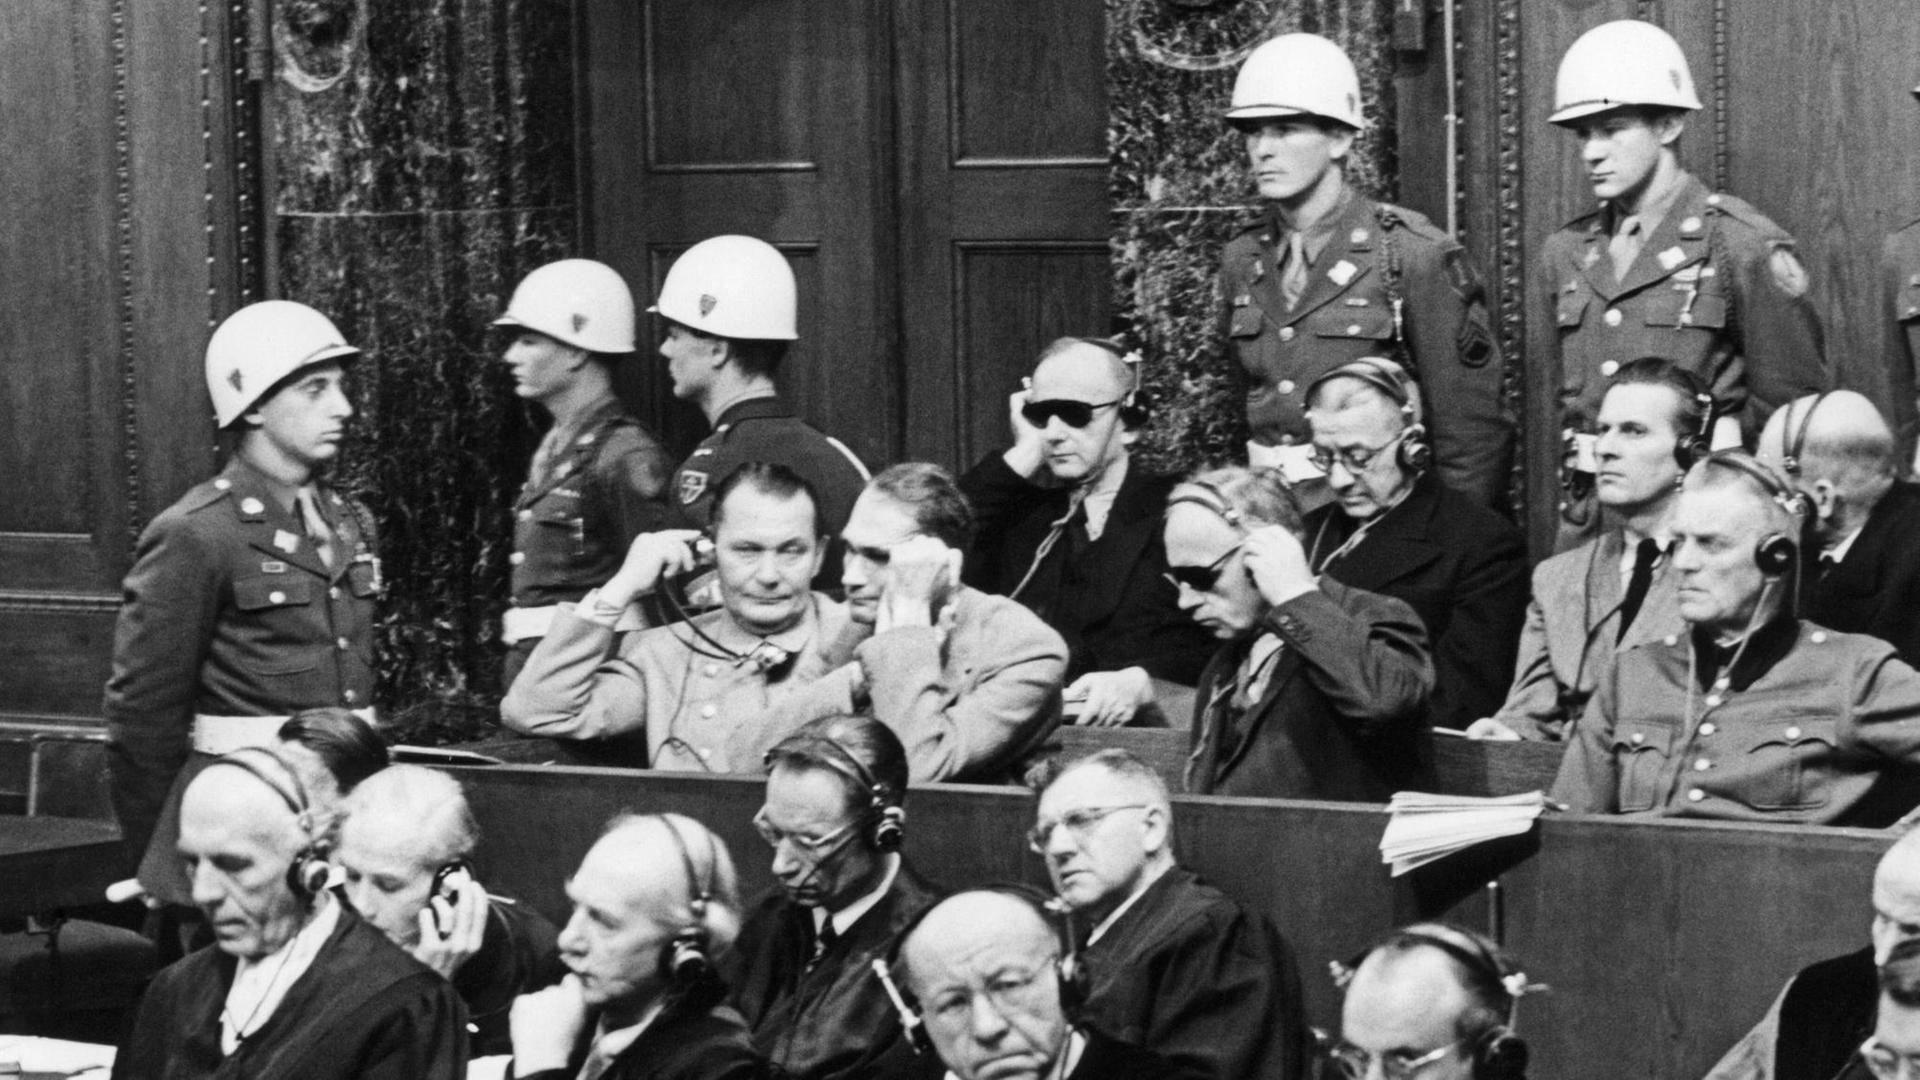 Foto der Nürnberger Prozesse, 1. Reihe v.l. Hermann Göring, Rudolf Heß, Joachim von Ribbentrop, Wilhelm Keitel dahinter 2. Reihe: Erich Raeder, Baldur von Schirach, Fritz Sauckel.